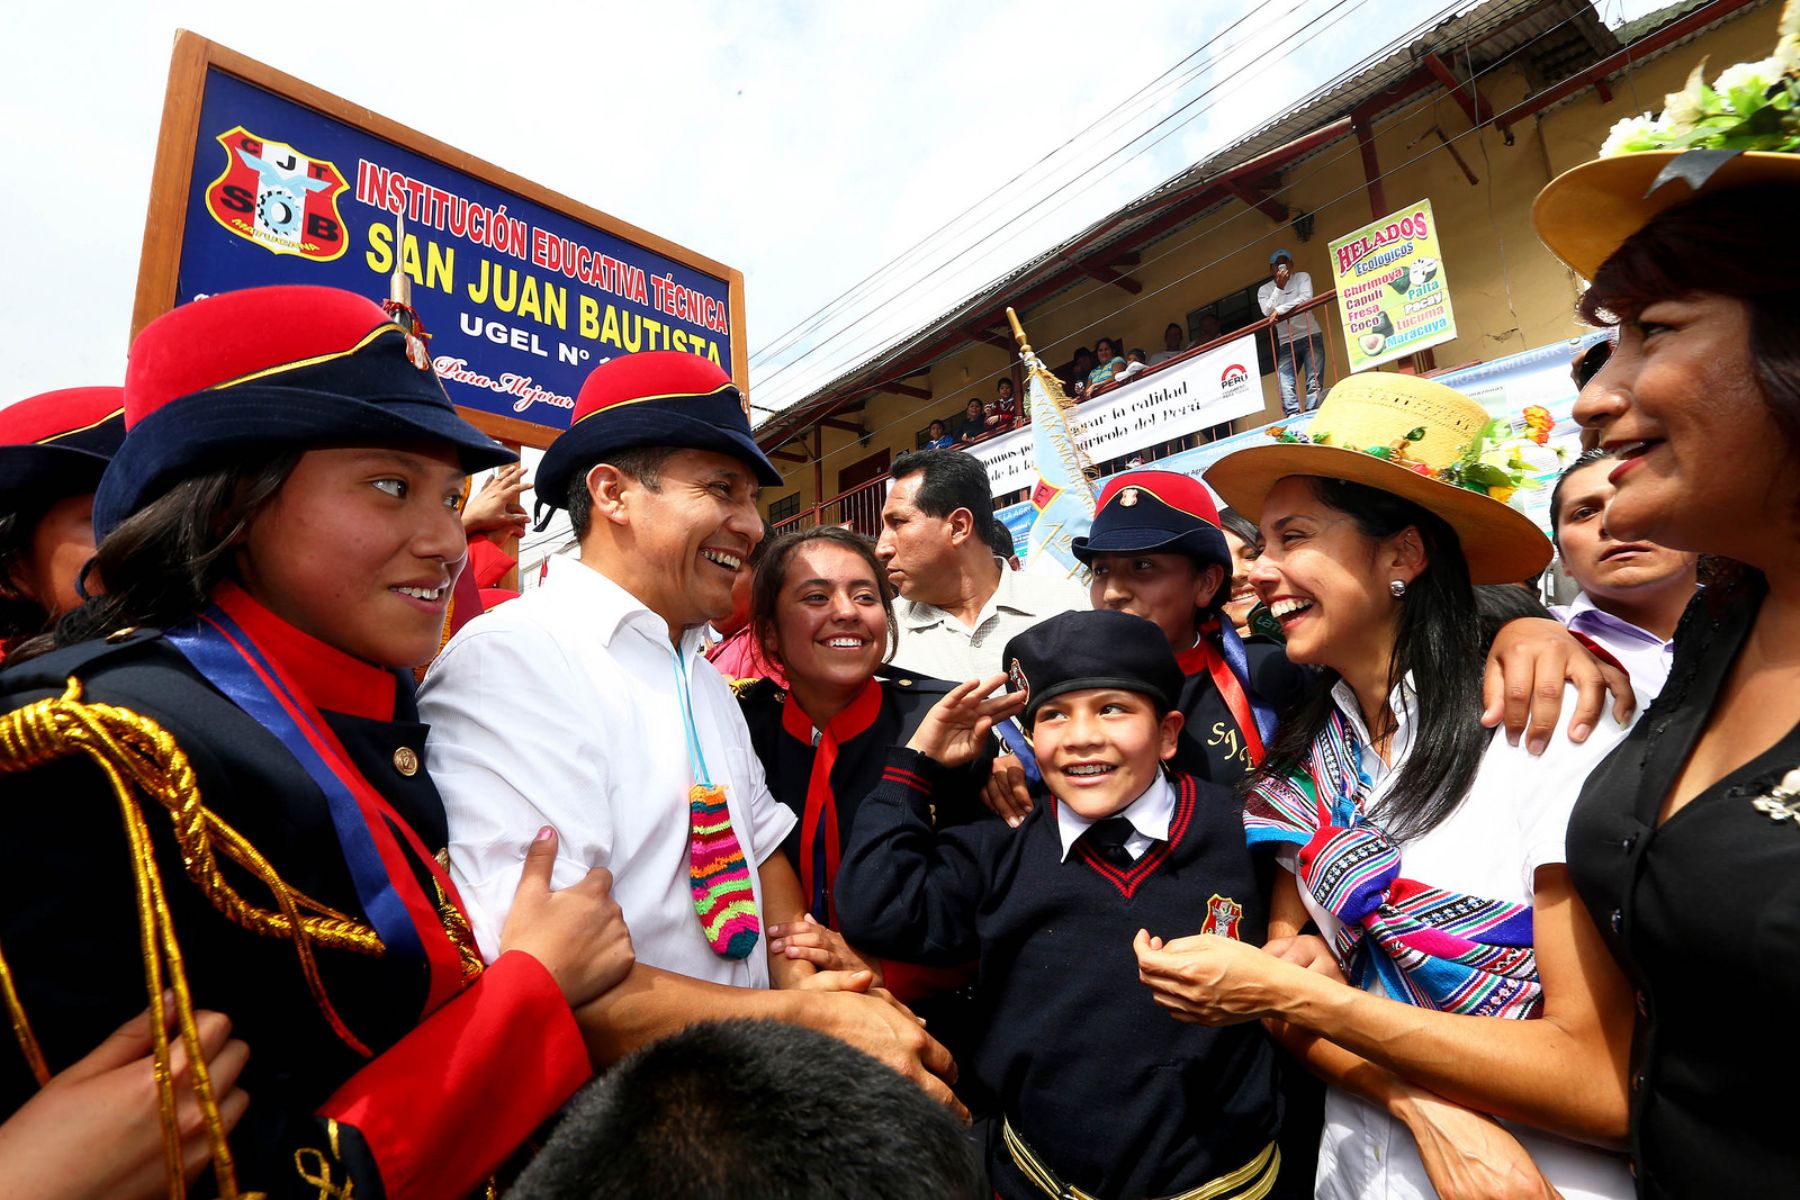 Presidente Ollanta Humala participa en lanzamiento del Año Internacional de la Agricultura Familiar, en la localidad de Matucana, provincia de Huarochirí. Foto: ANDINA/Prensa Presidencia.